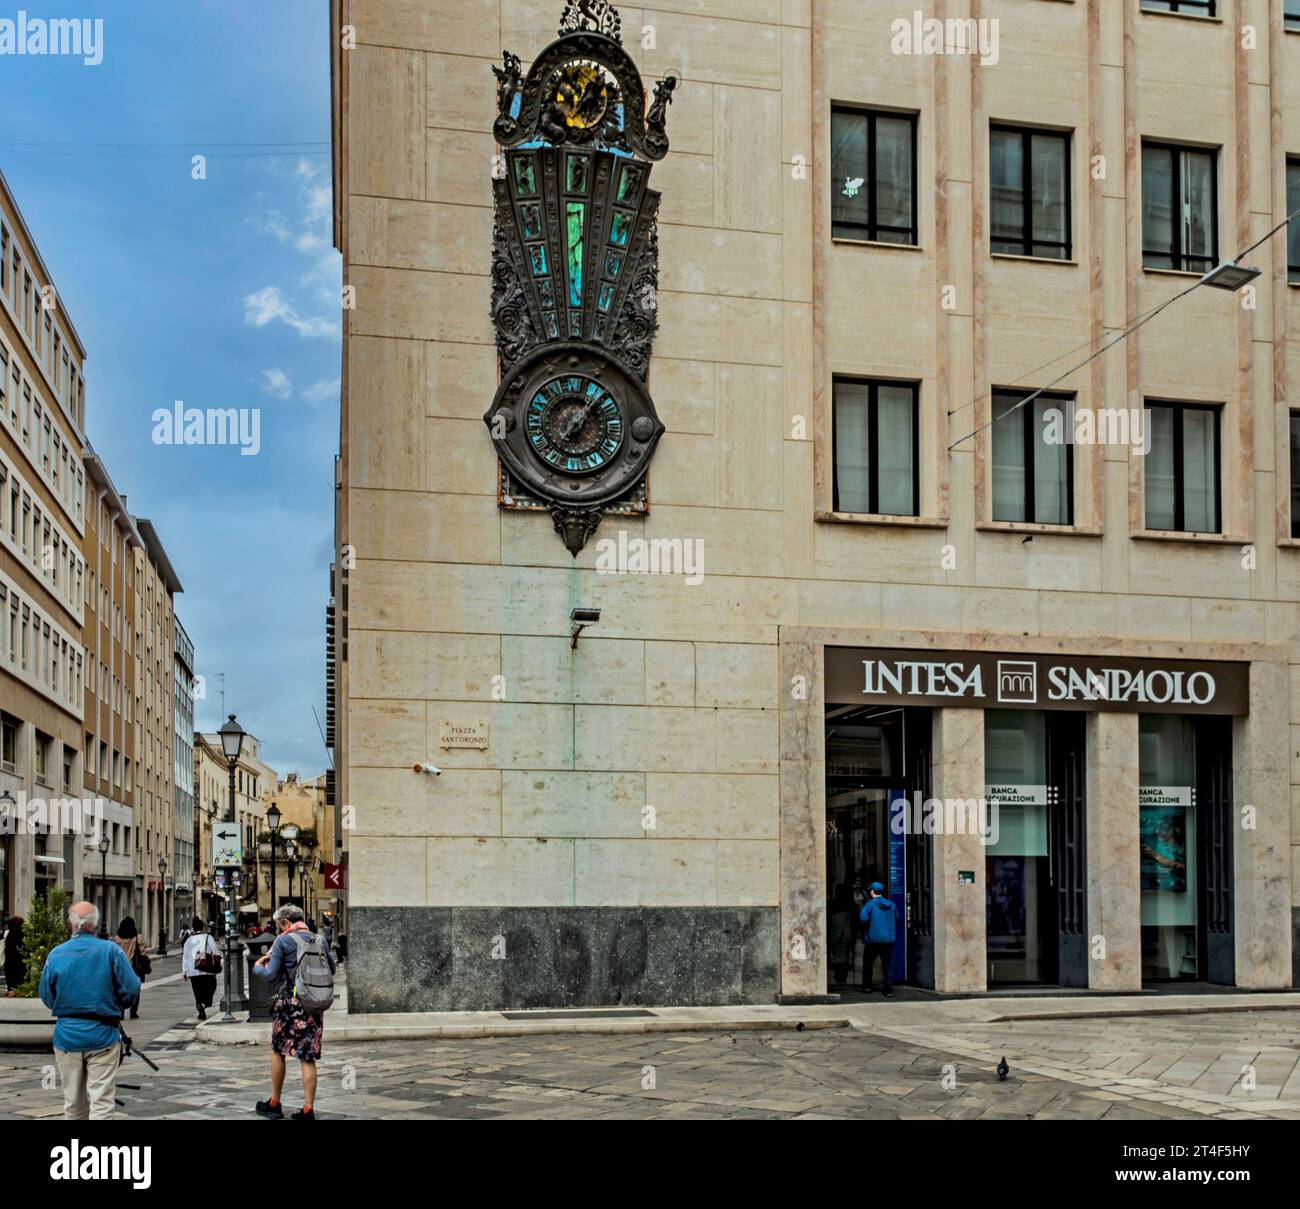 Une succursale de Intesa Sanpaolo à Lecce Italie. Intesa Sanpaolo est la plus grande banque italienne par ses actifs et la 27e plus grande banque mondiale. Banque D'Images